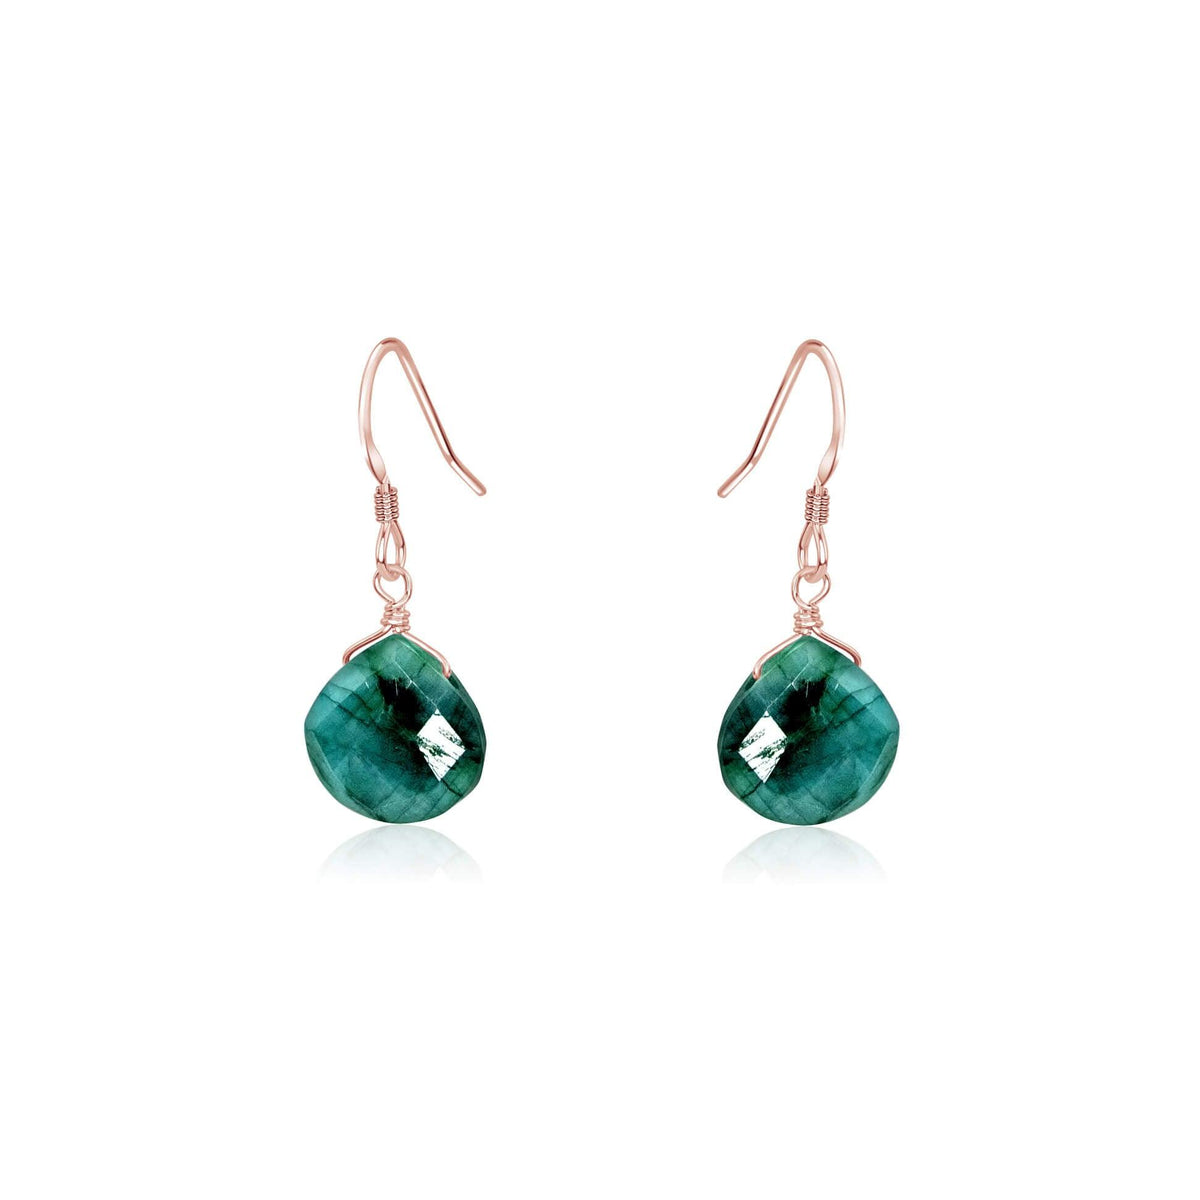 Teardrop Earrings - Emerald - 14K Rose Gold Fill - Luna Tide Handmade Jewellery